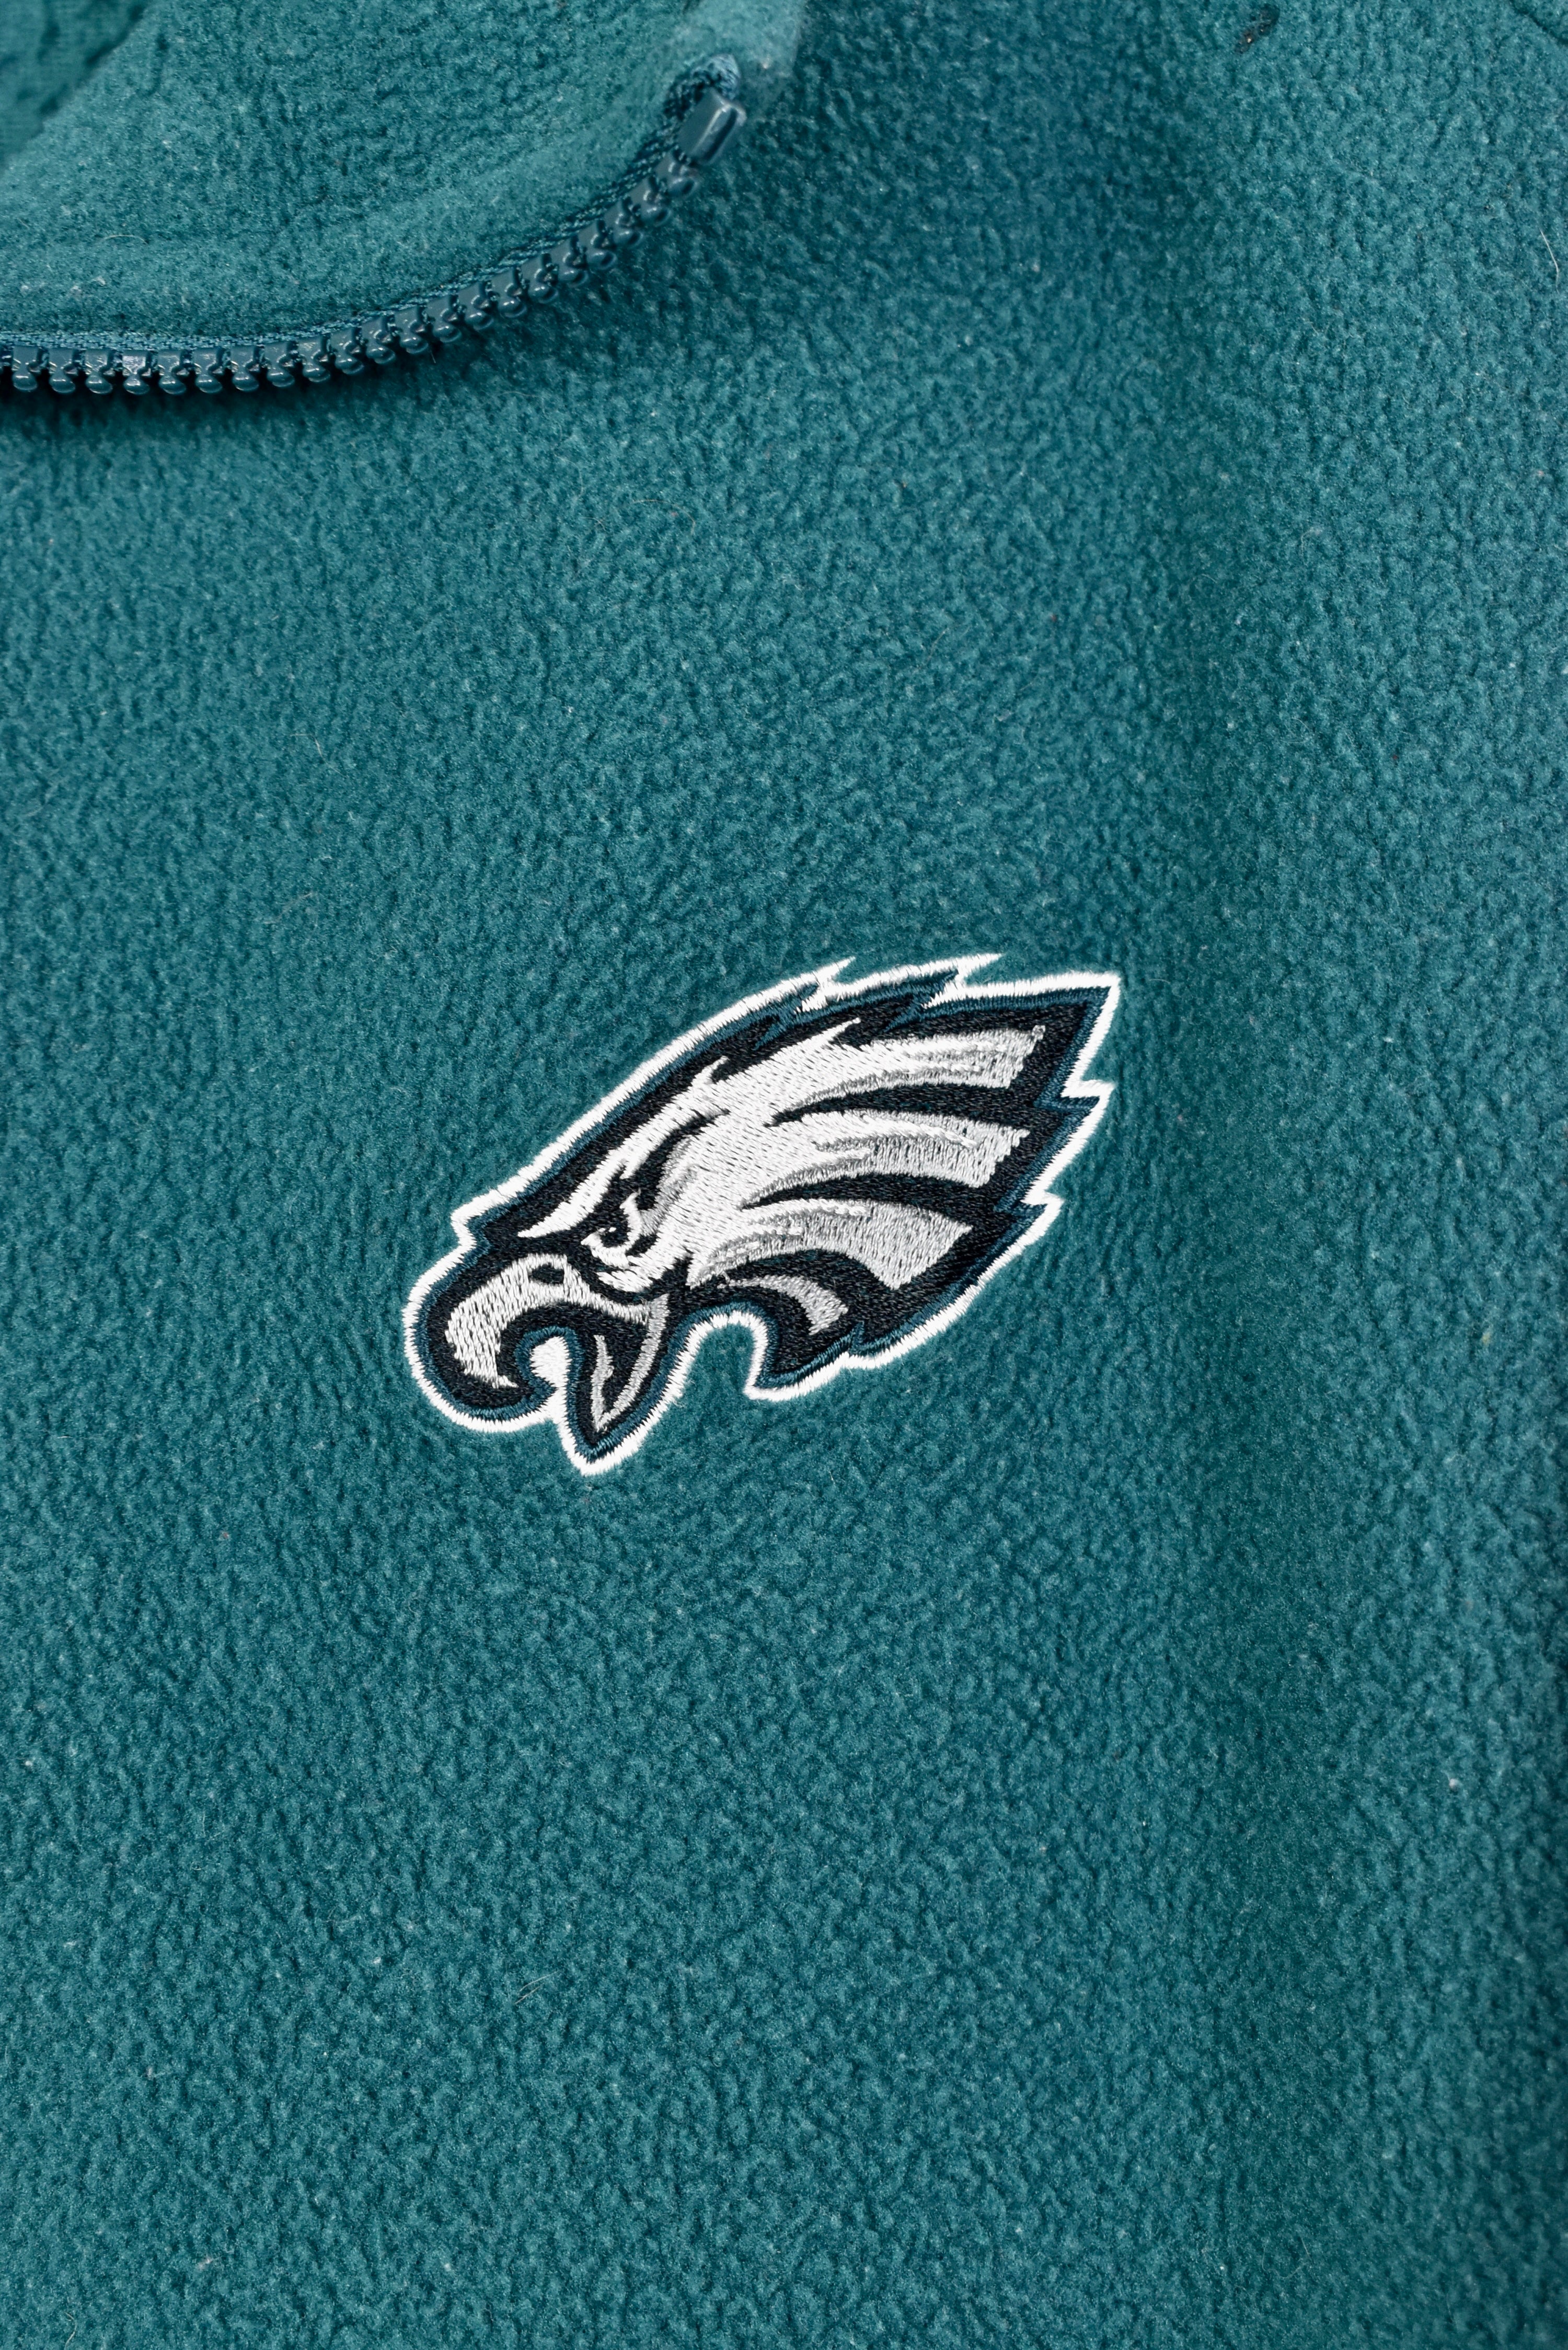 Vintage Philadelphia Eagles fleece, NFL 1/4 zip embroidered sweatshirt - XXXXL, green PRO SPORT